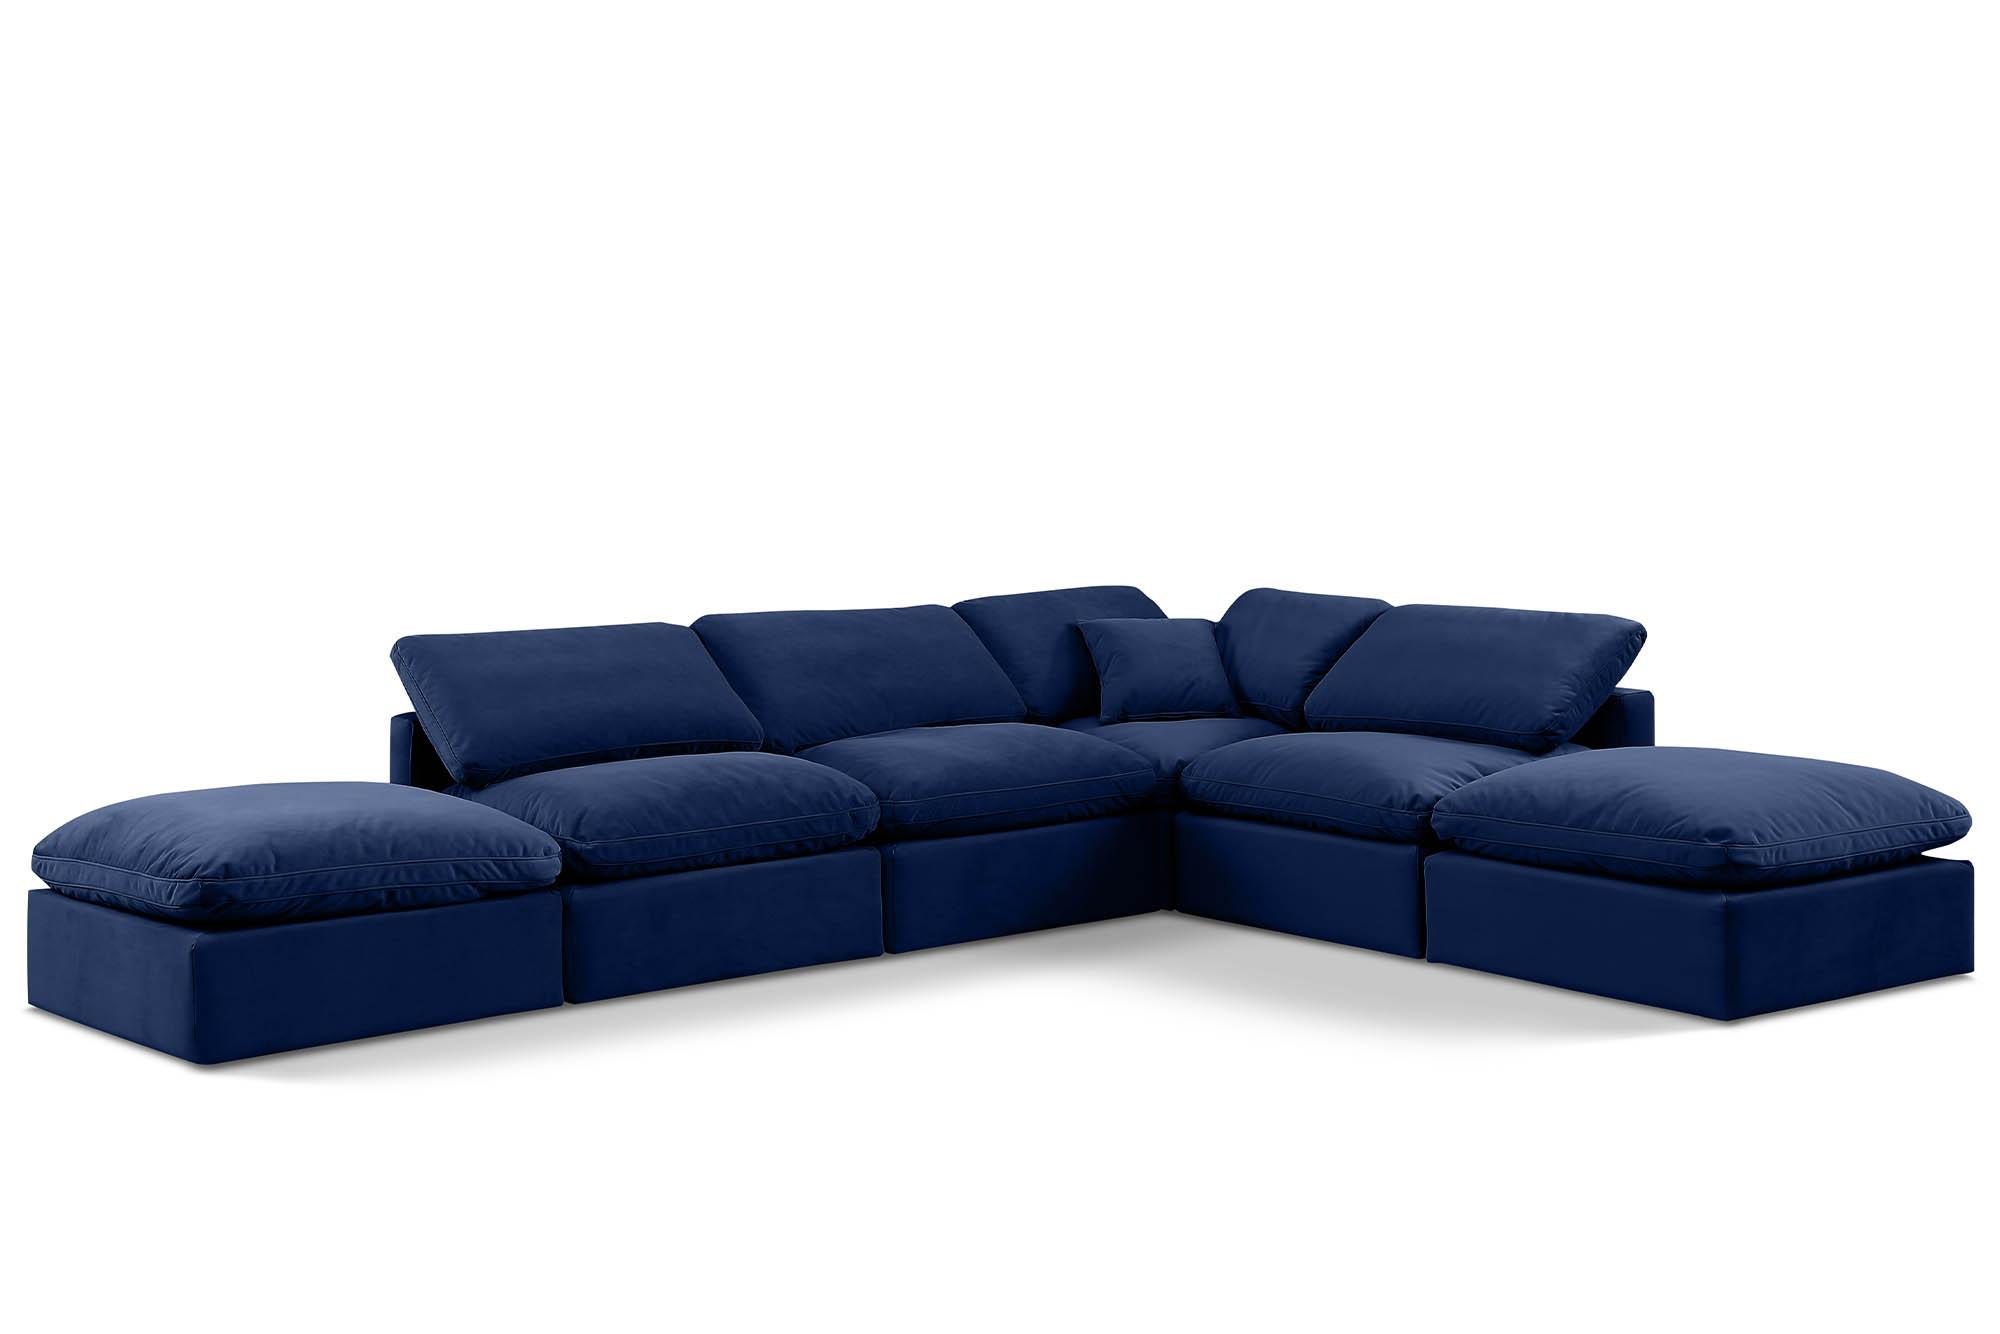 Contemporary, Modern Modular Sectional Sofa INDULGE 147Navy-Sec6E 147Navy-Sec6E in Navy Velvet